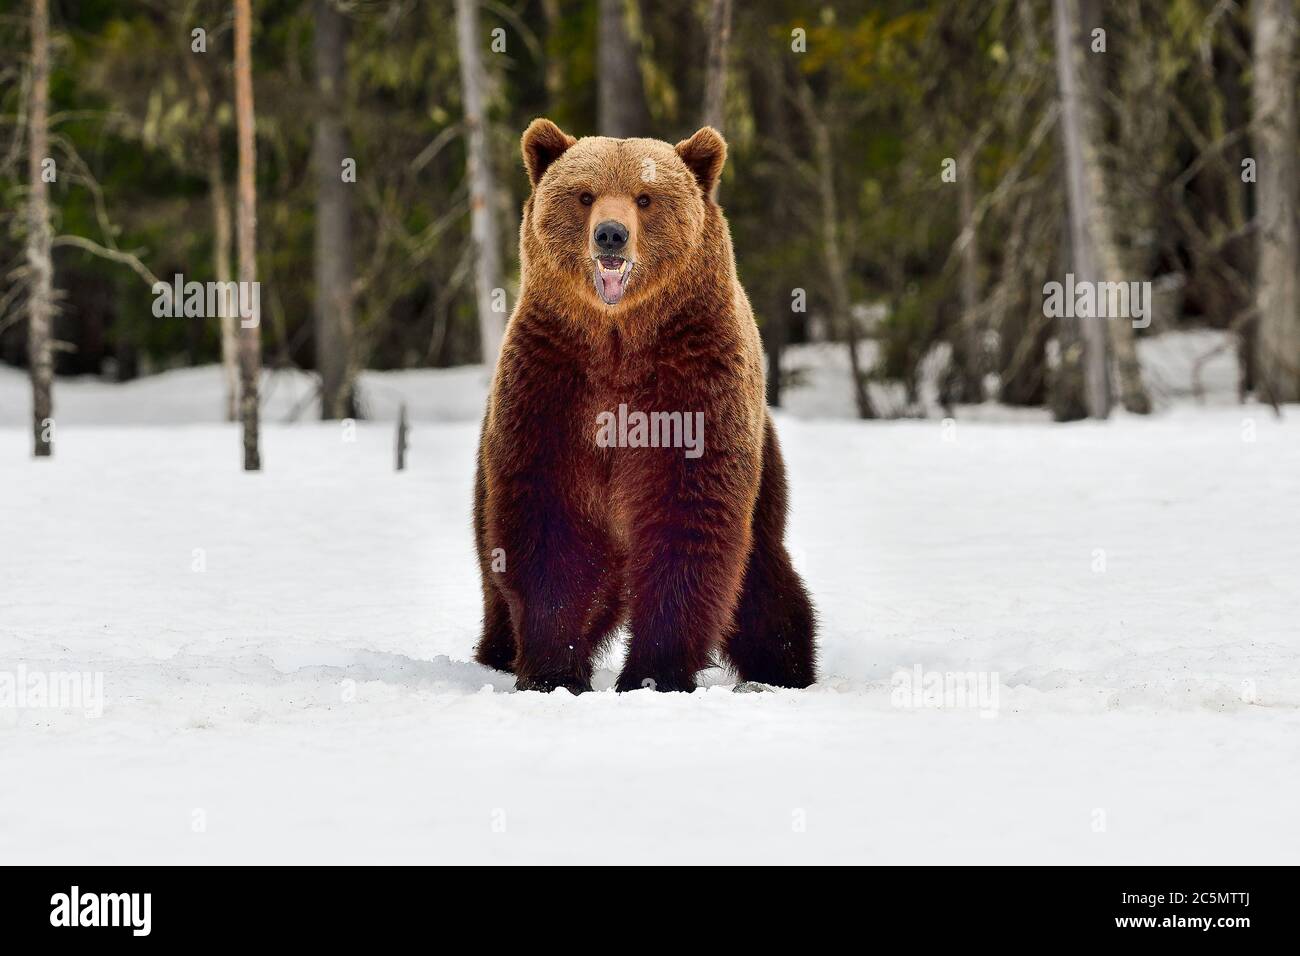 Le Big Brown Bear obtient une meilleure vue sur les environs en se tenant debout et en sentant l'air. Banque D'Images